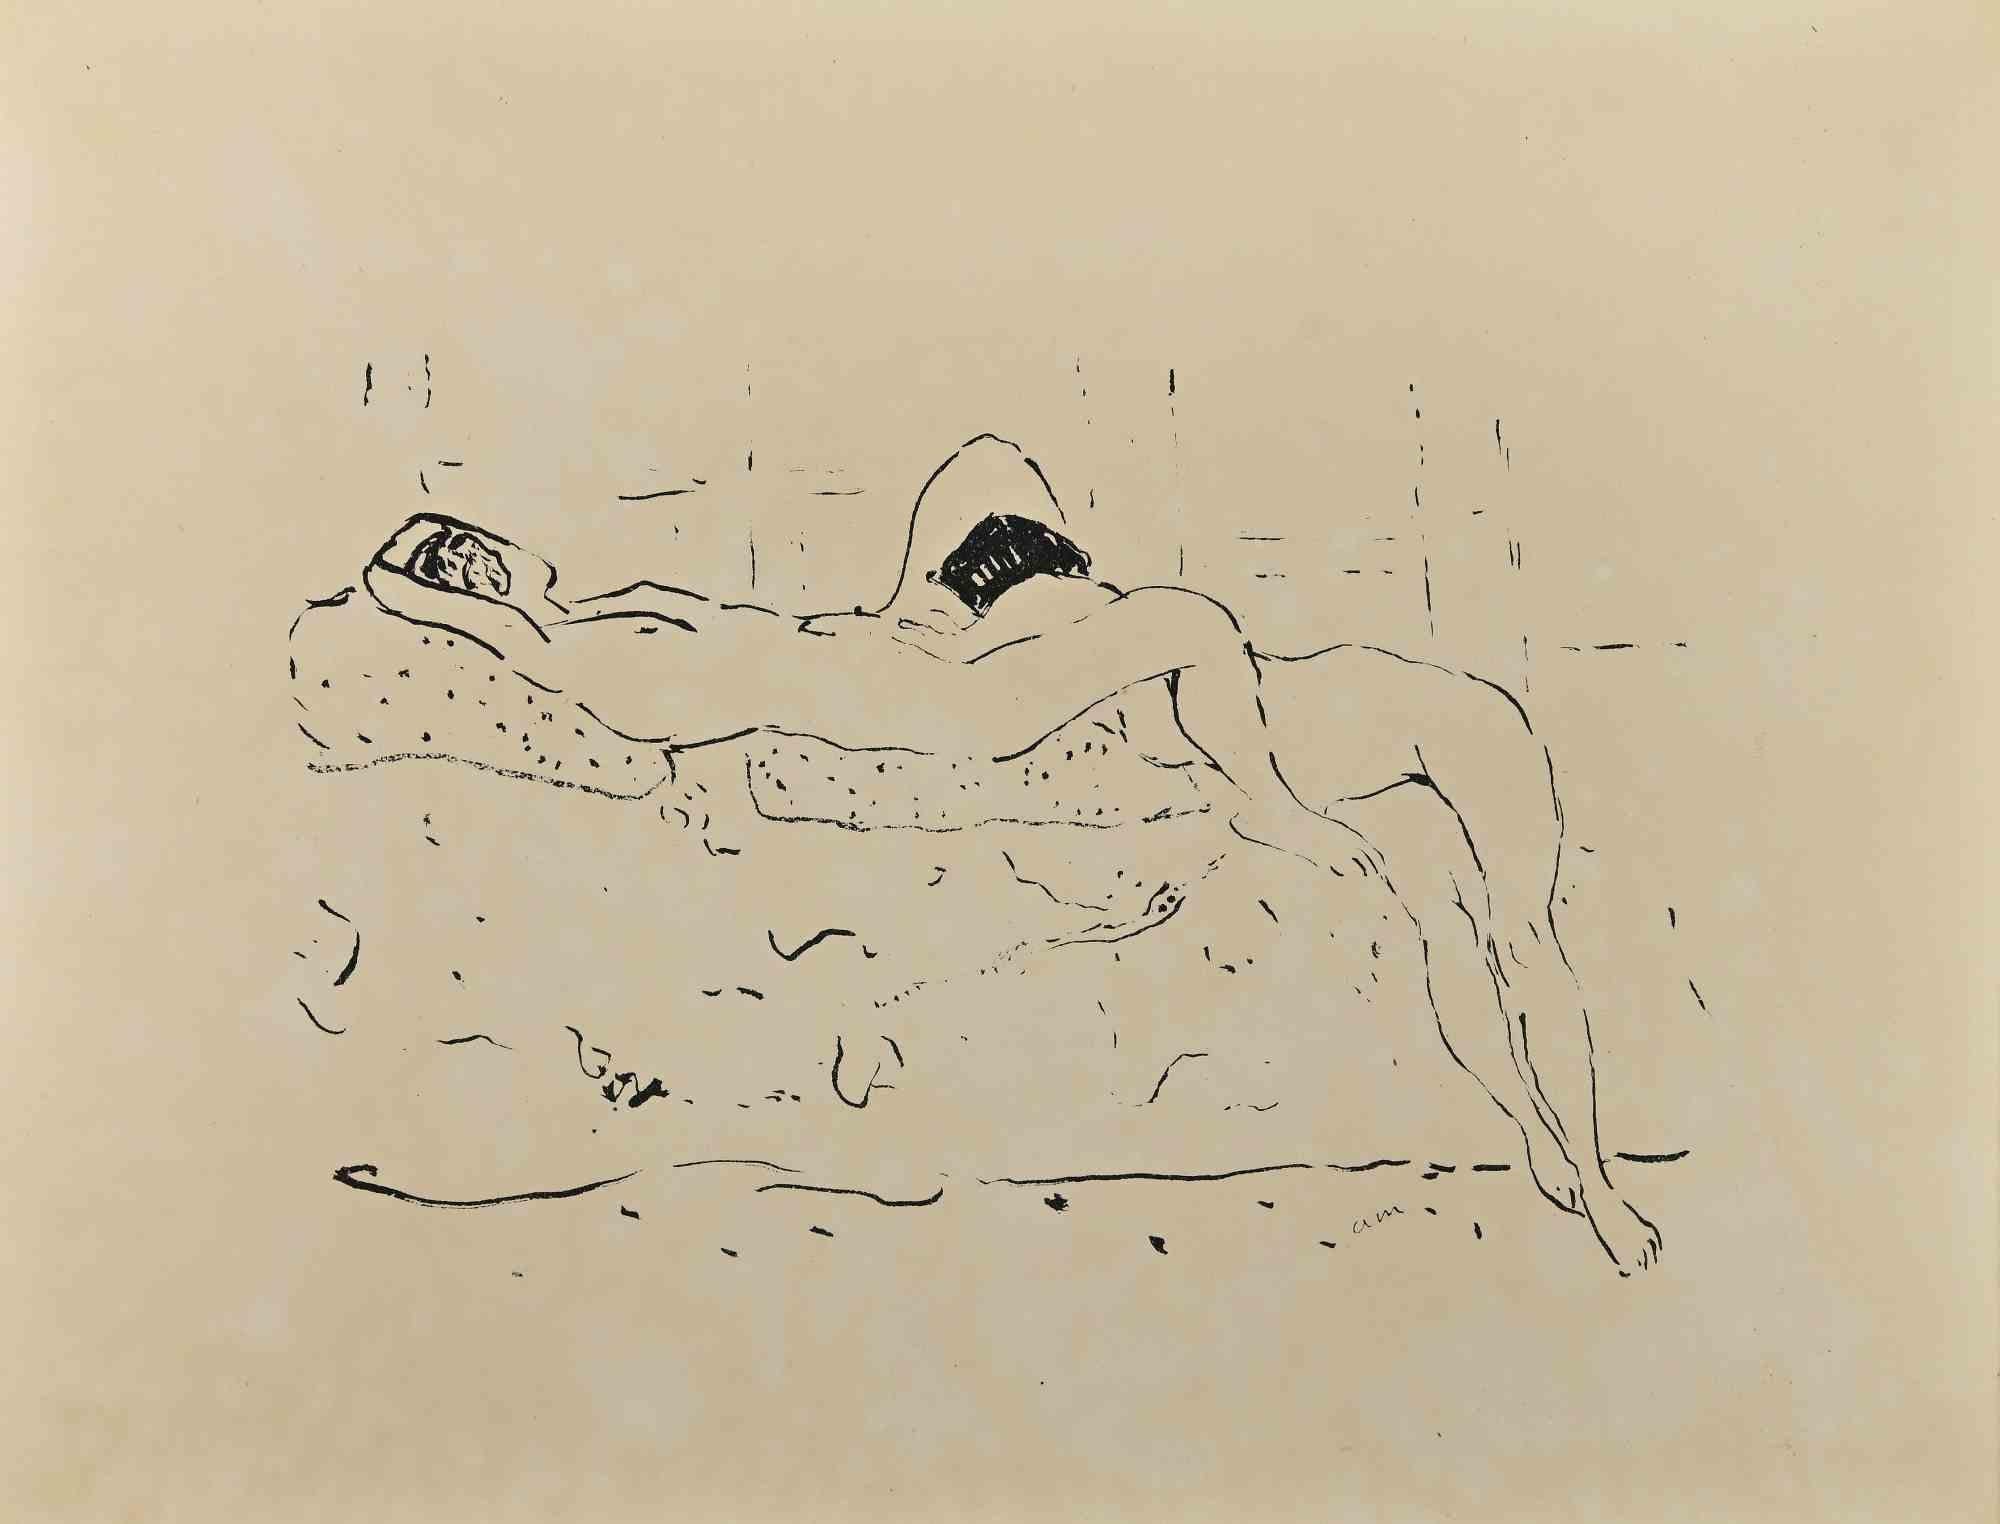 Erotic Scene ist eine wunderschöne Lithographie auf elfenbeinfarbenem Papier, die in den 1920er Jahren von Albert Marquet geschaffen wurde.  (Bordeaux, 1875 - Paris, 1947).

Monogrammiert auf der Platte am unteren Rand. 

Aus der Suite L'Académie